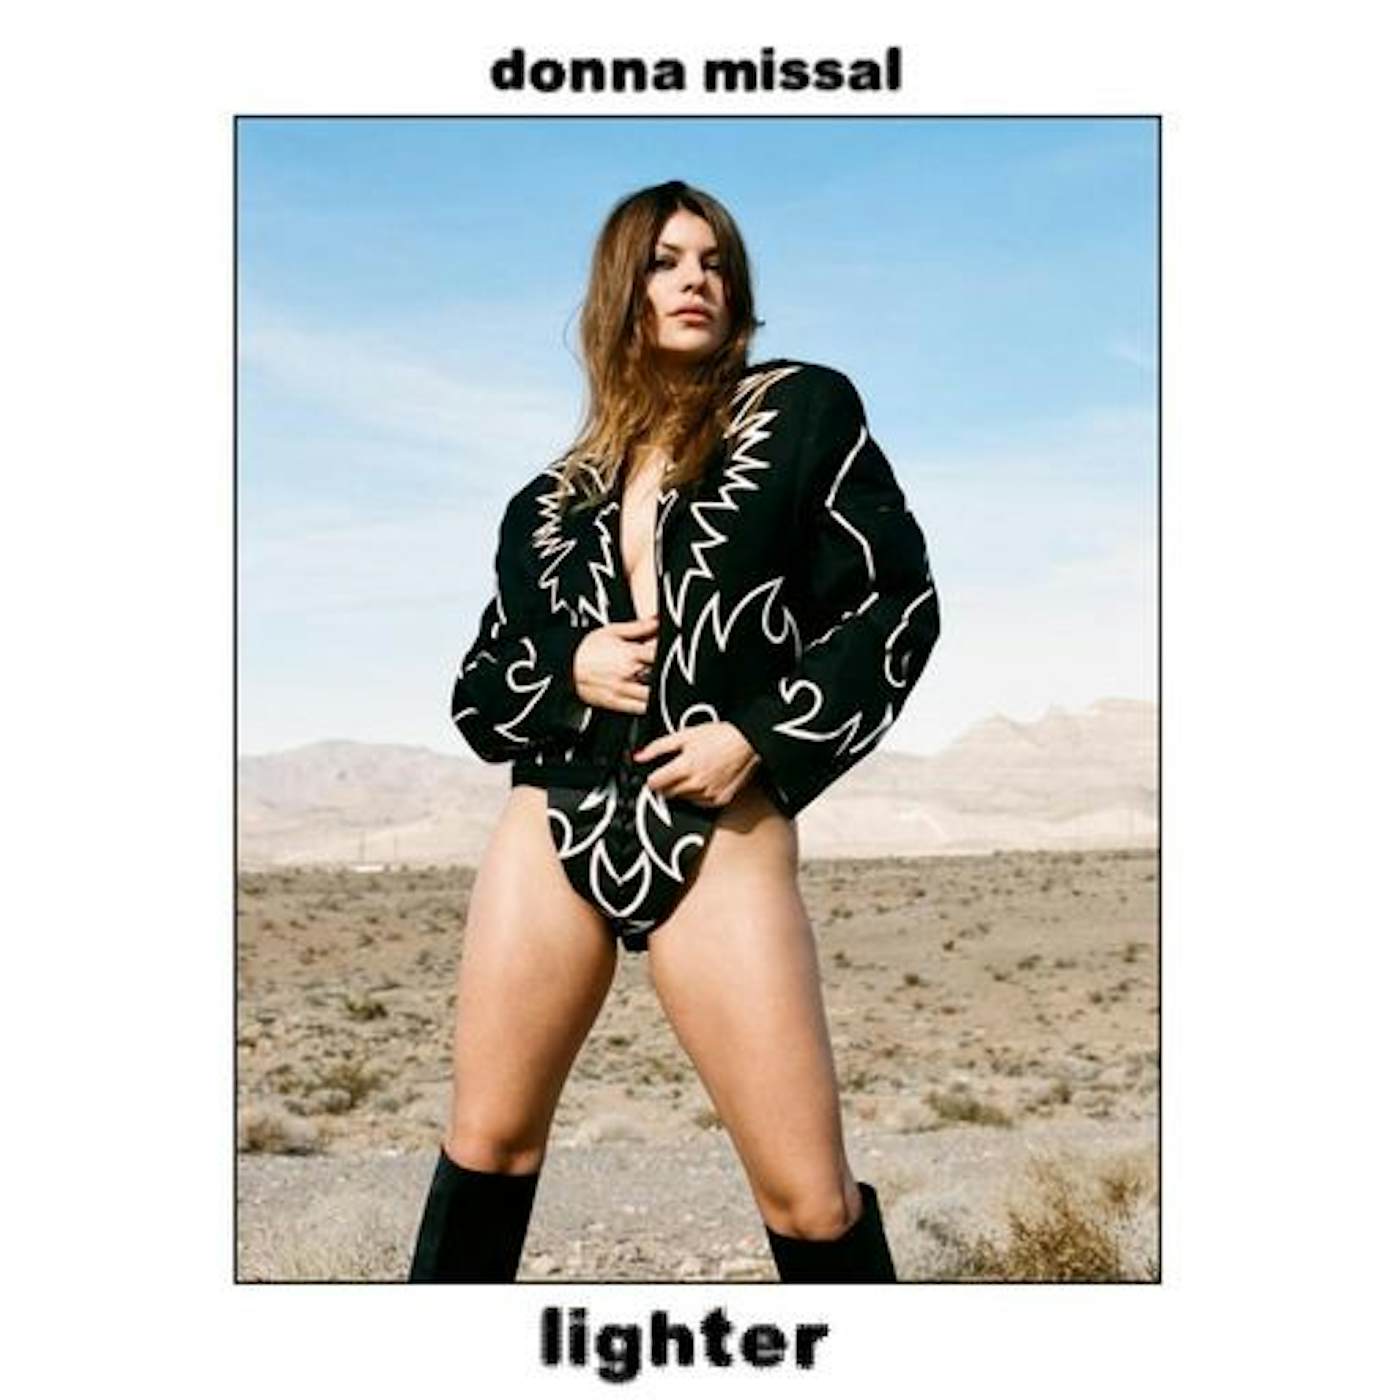 Donna Missal Lighter Vinyl Record